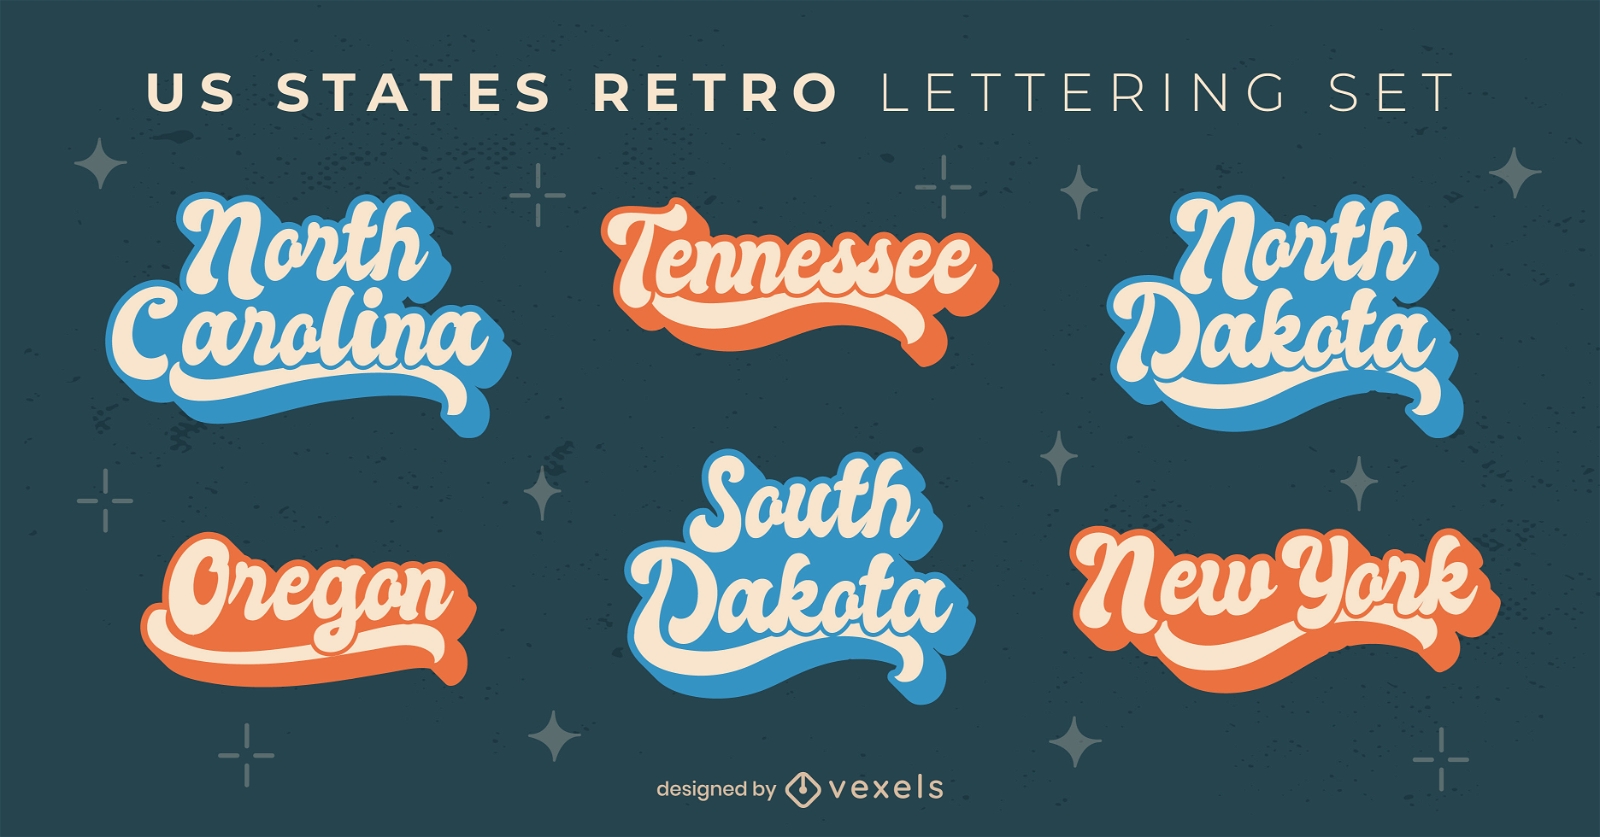 USA states vintage lettering set